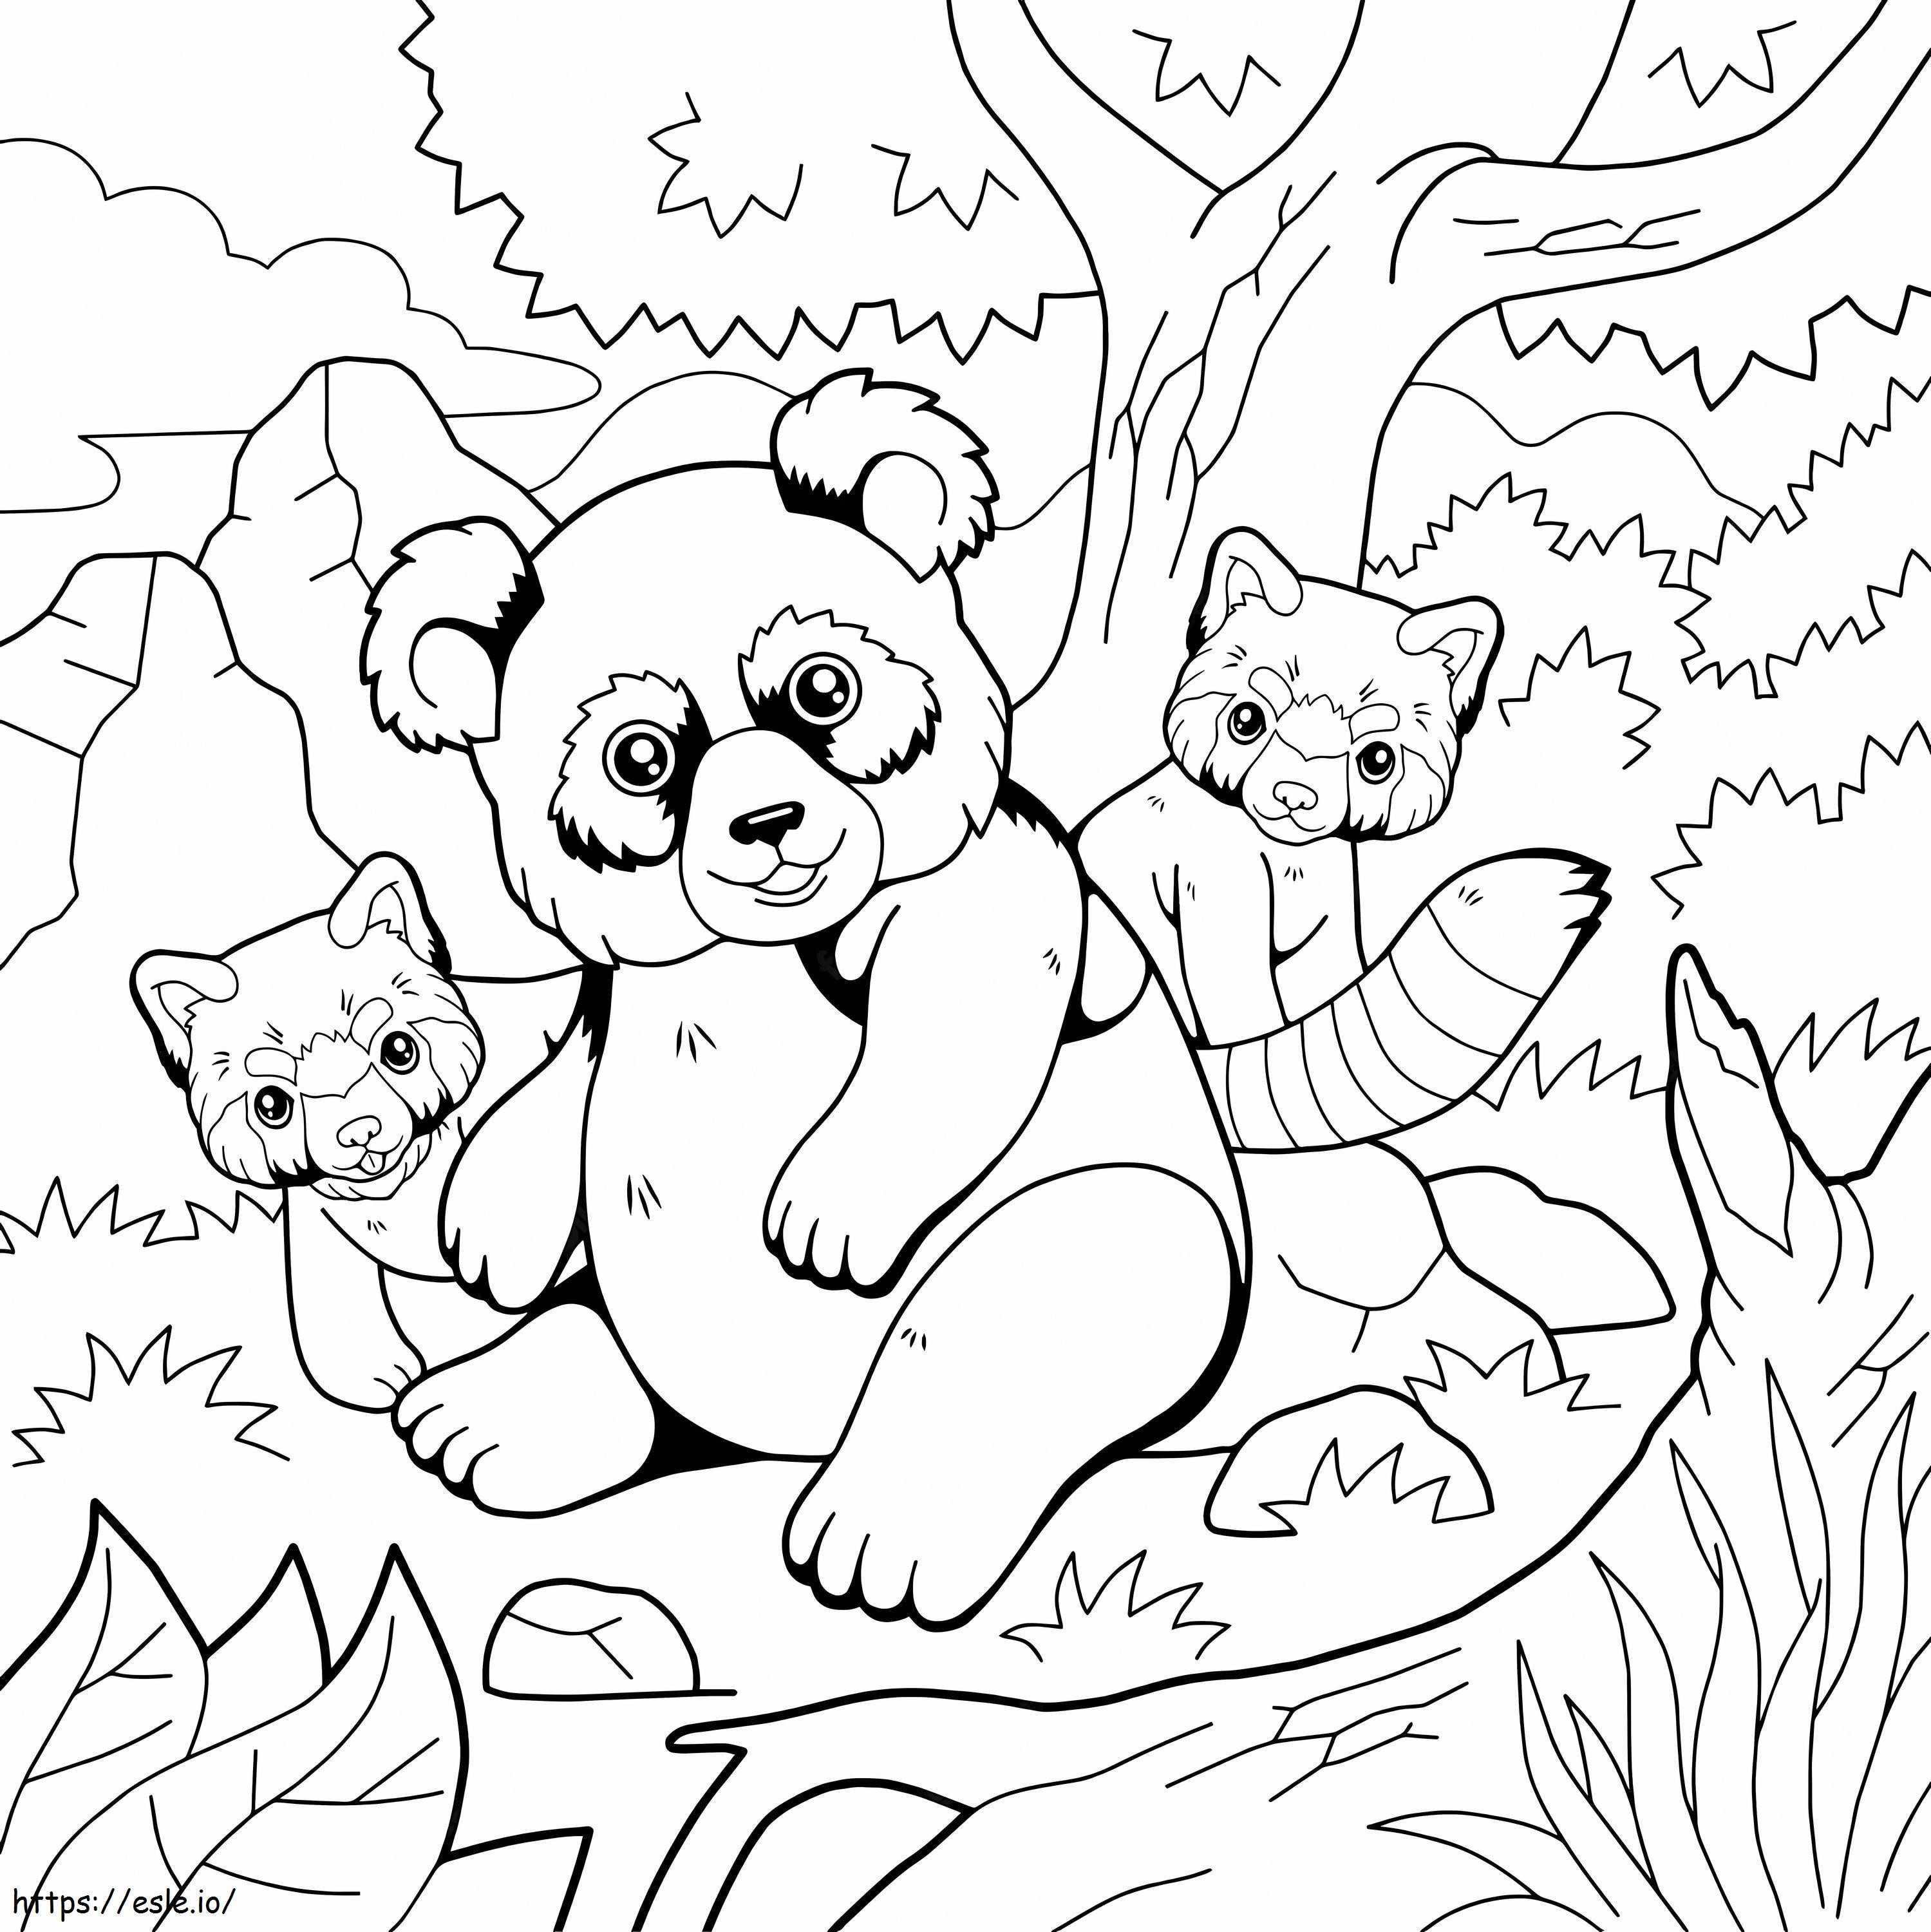 Coloriage Mère Panda et deux bébés pandas à imprimer dessin